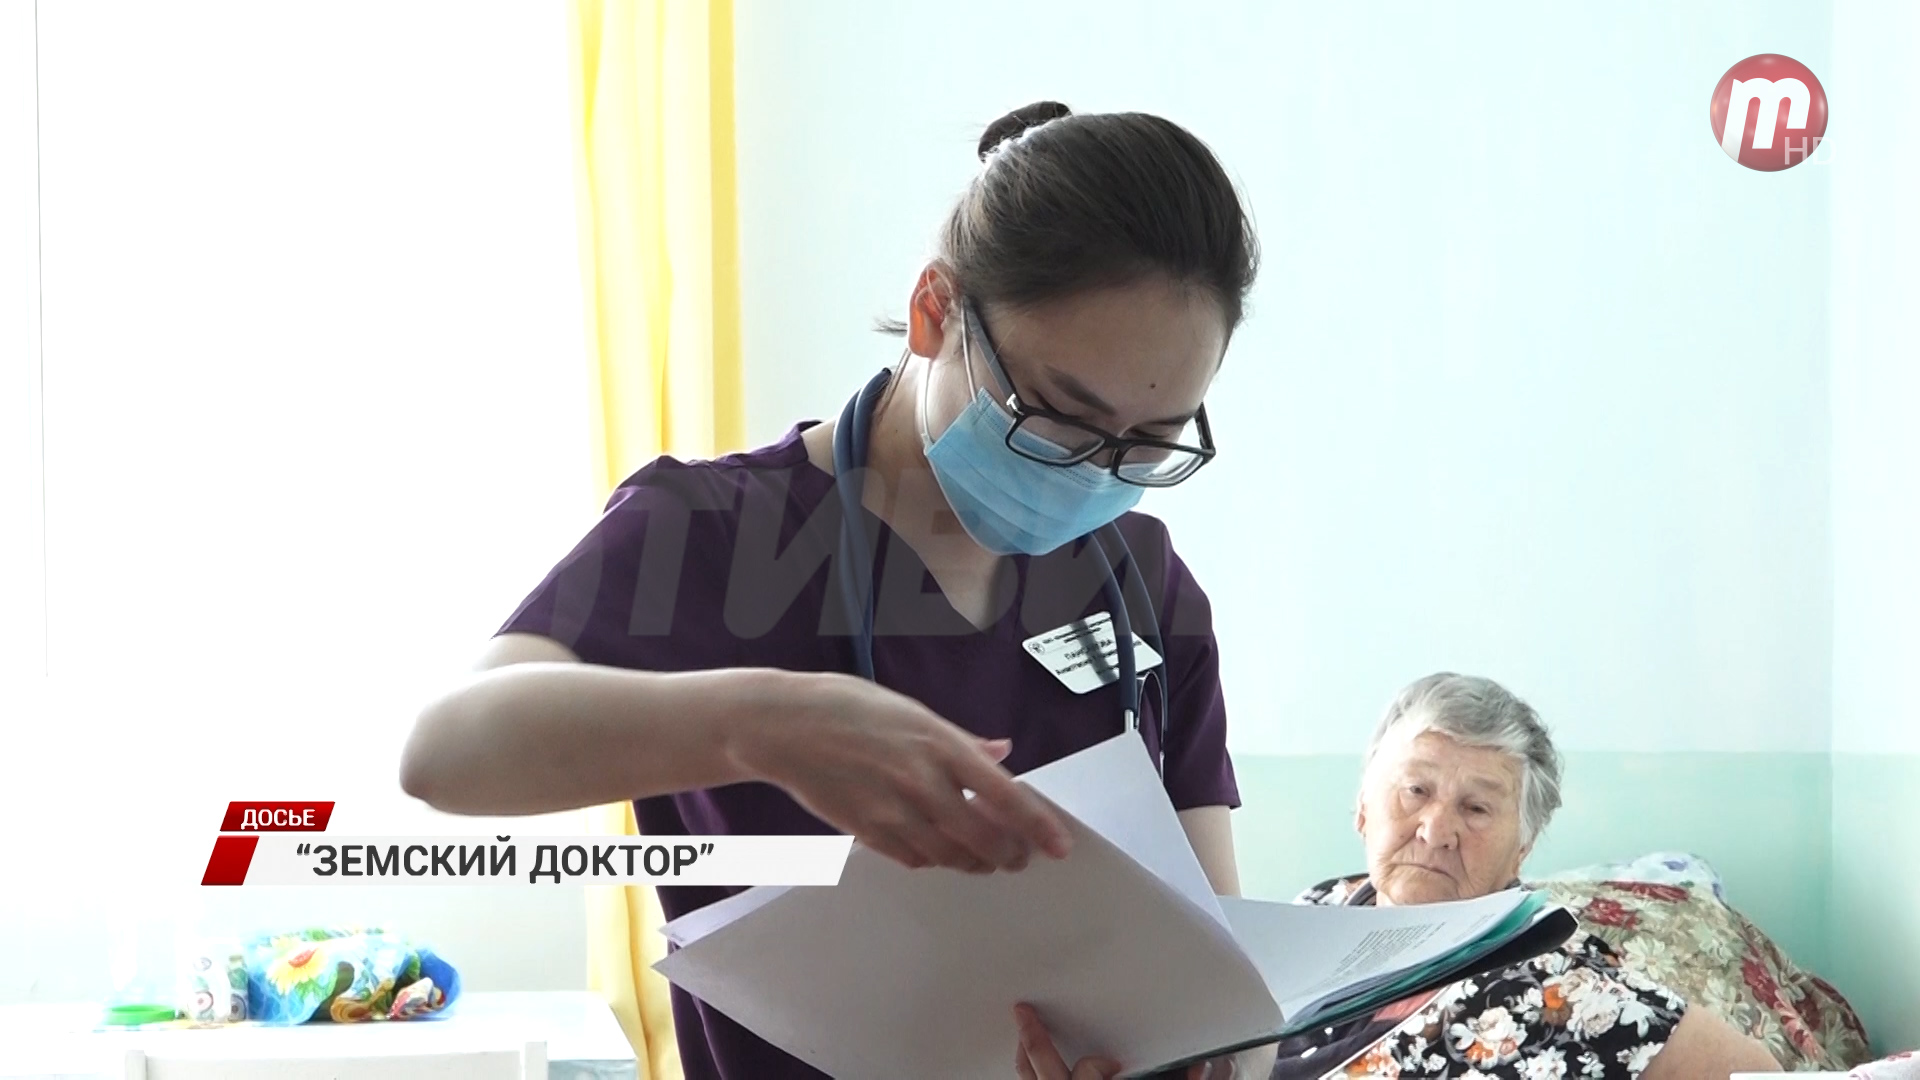 В Бурятии начинают выплачивать миллион рублей от республики медикам